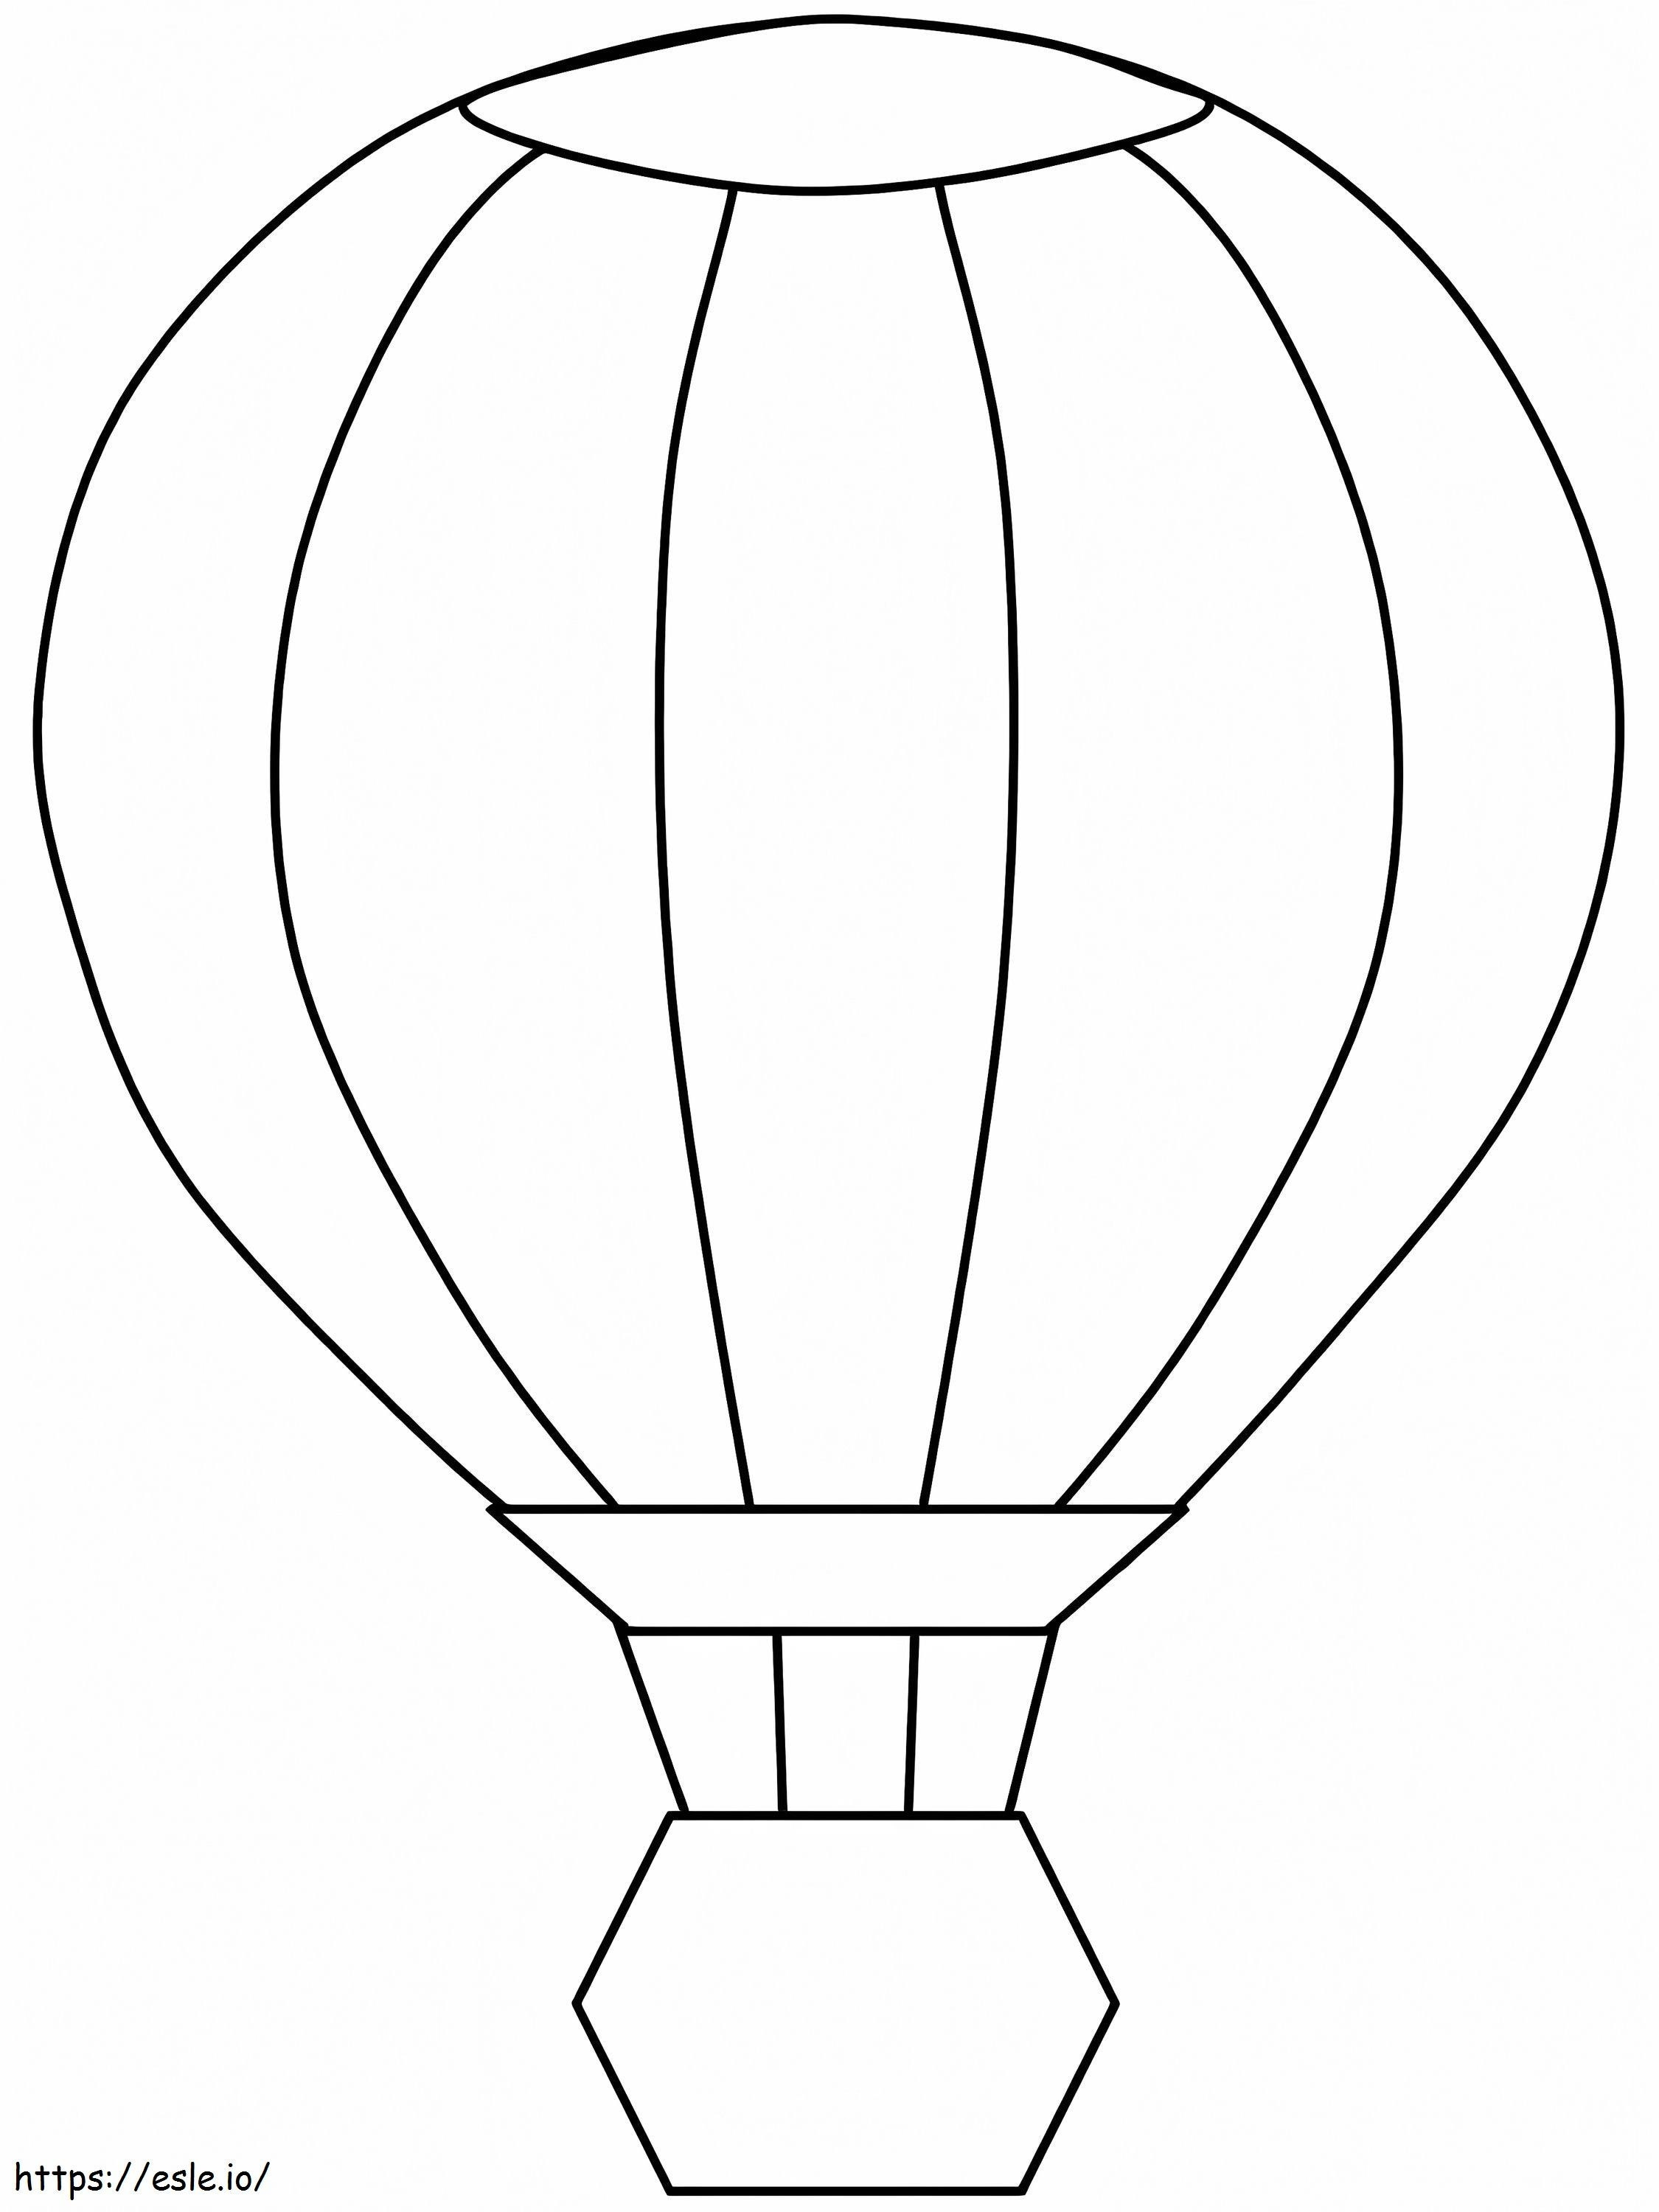 Balon cu aer cald ușor de colorat